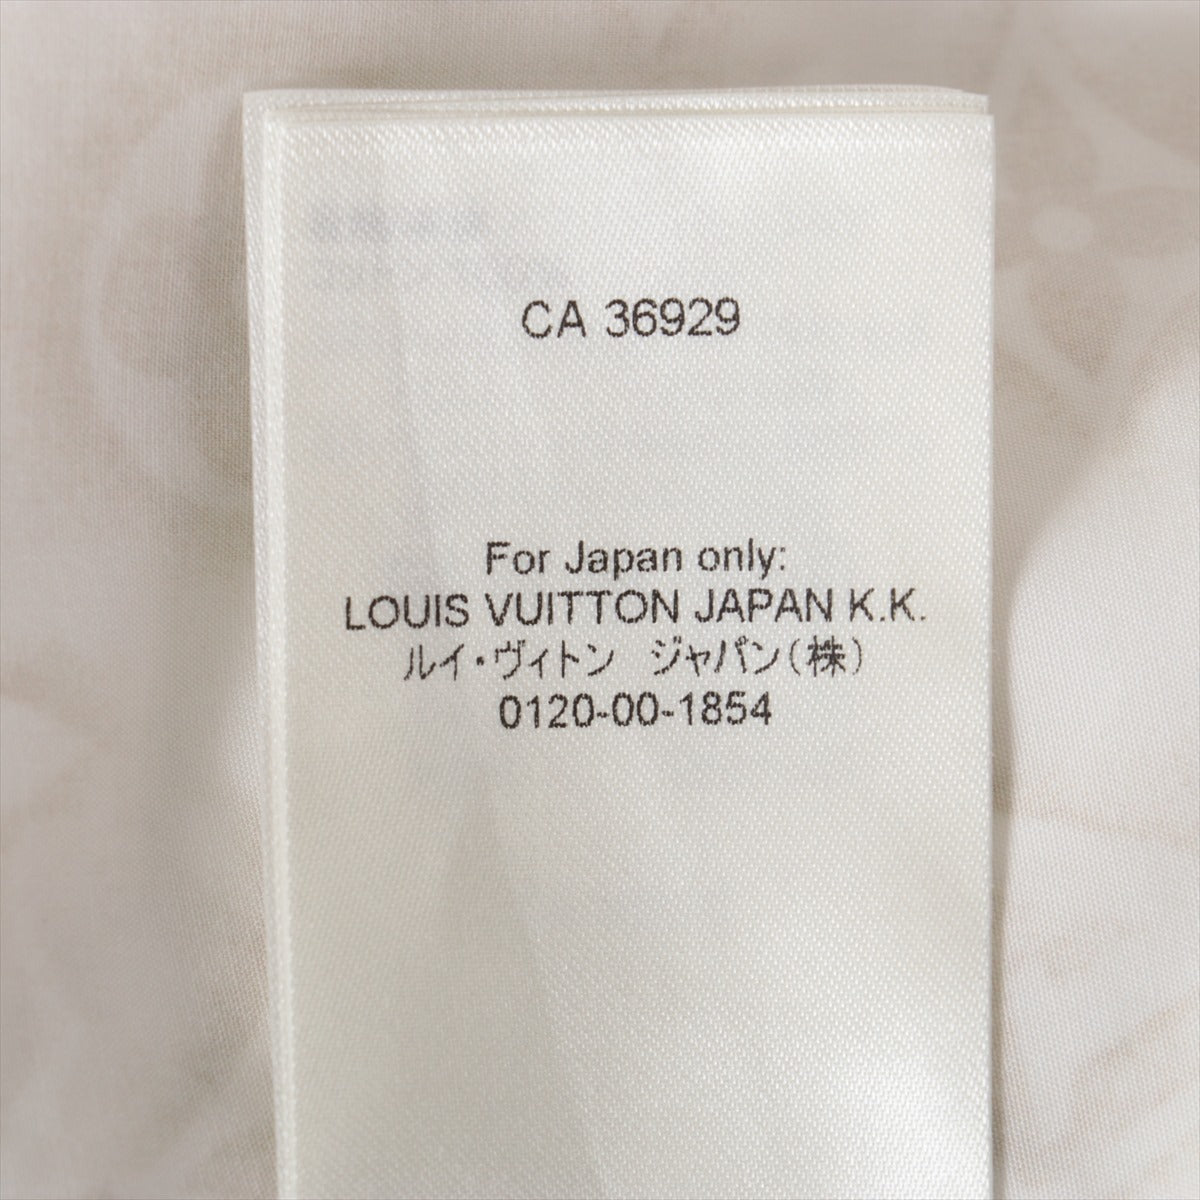 Anel Louis Vuitton - Produzido em aço inox - Tamanho 23